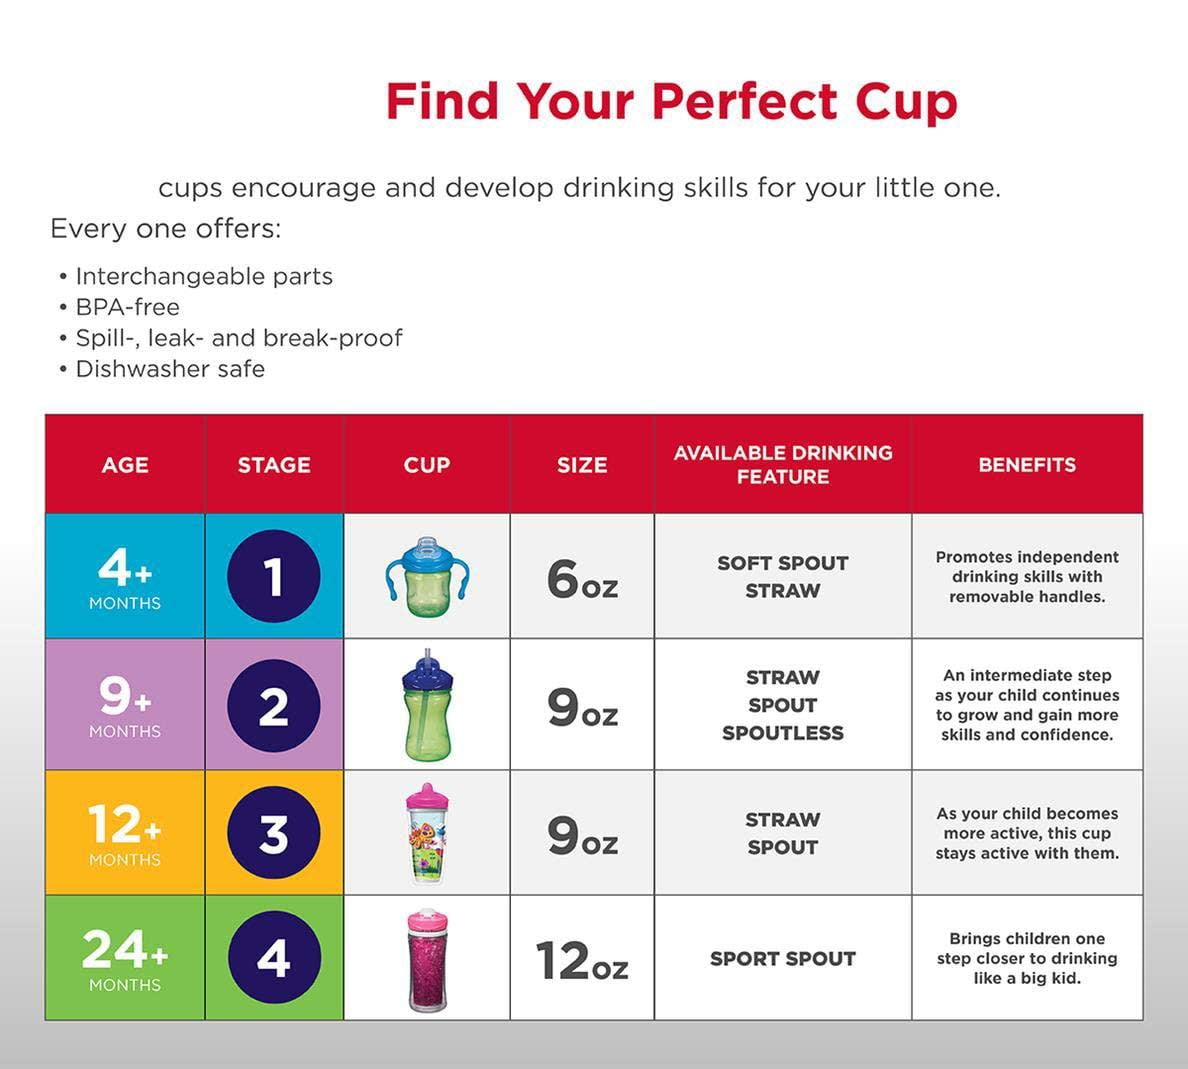 Playtex® Stage 3 Milk & Water Cups – PlaytexBaby